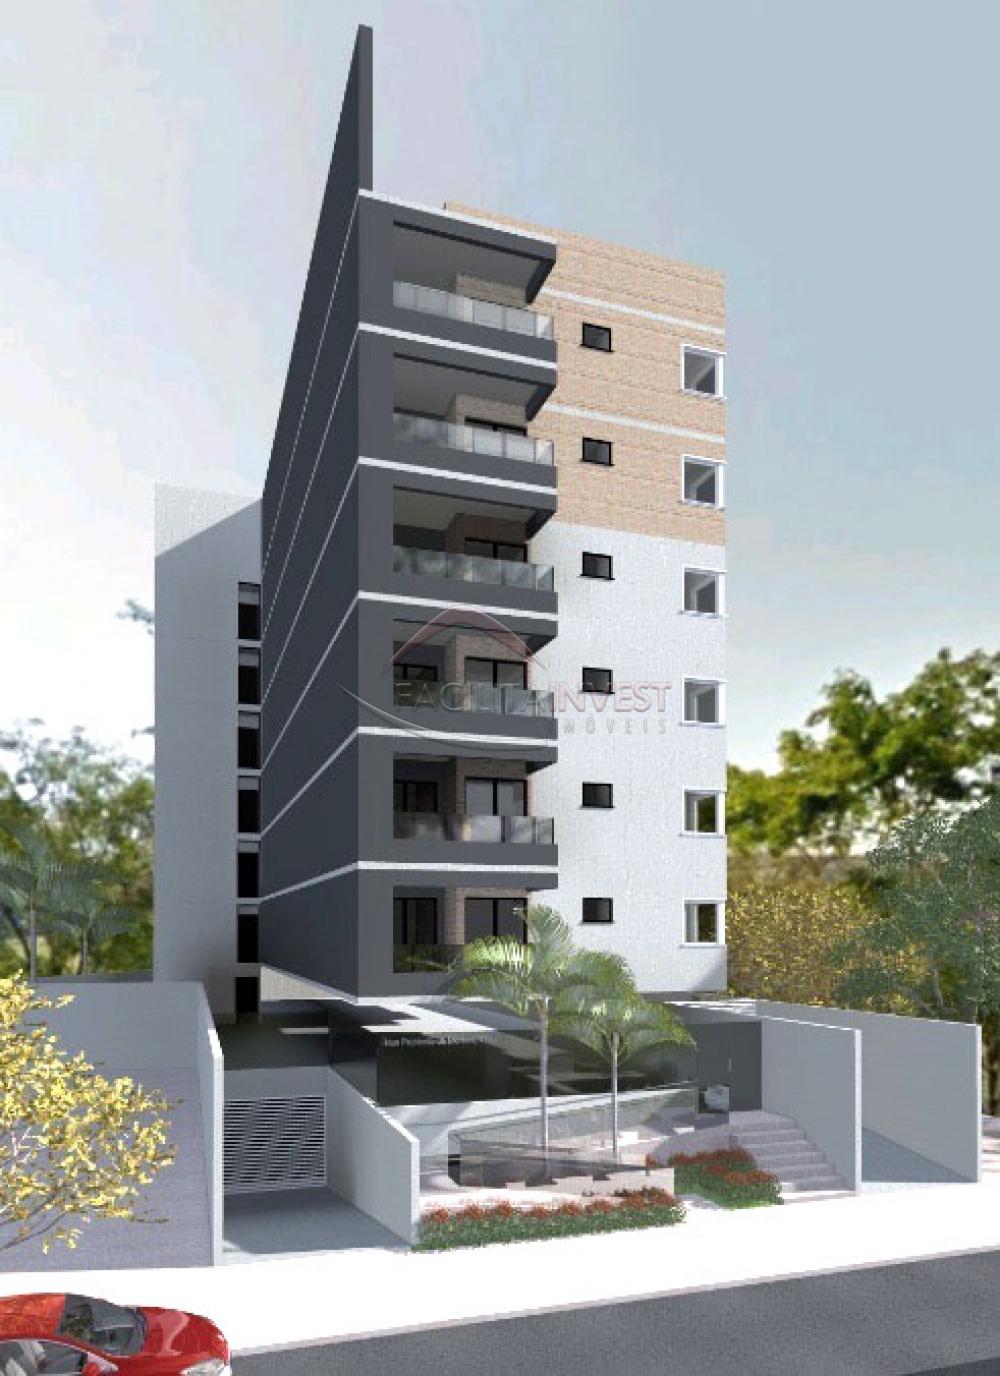 Comprar Lançamentos/ Empreendimentos em Construç / Apartamento padrão - Lançamento em Ribeirão Preto R$ 395.000,00 - Foto 1